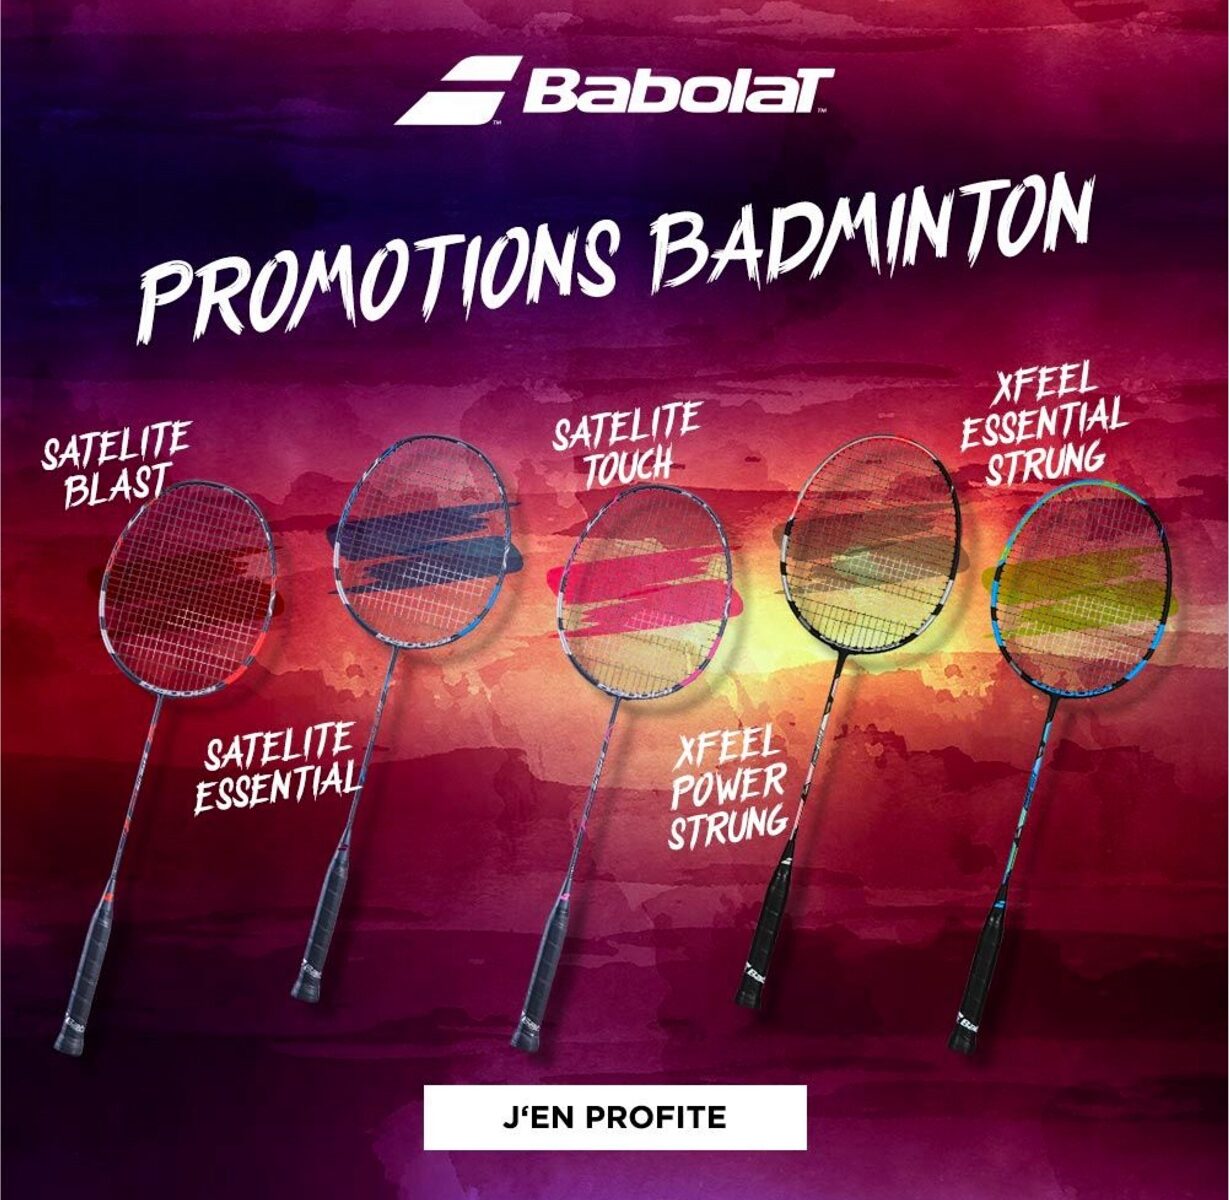 nouvelle collection raquettes badminton babolat sur protennis